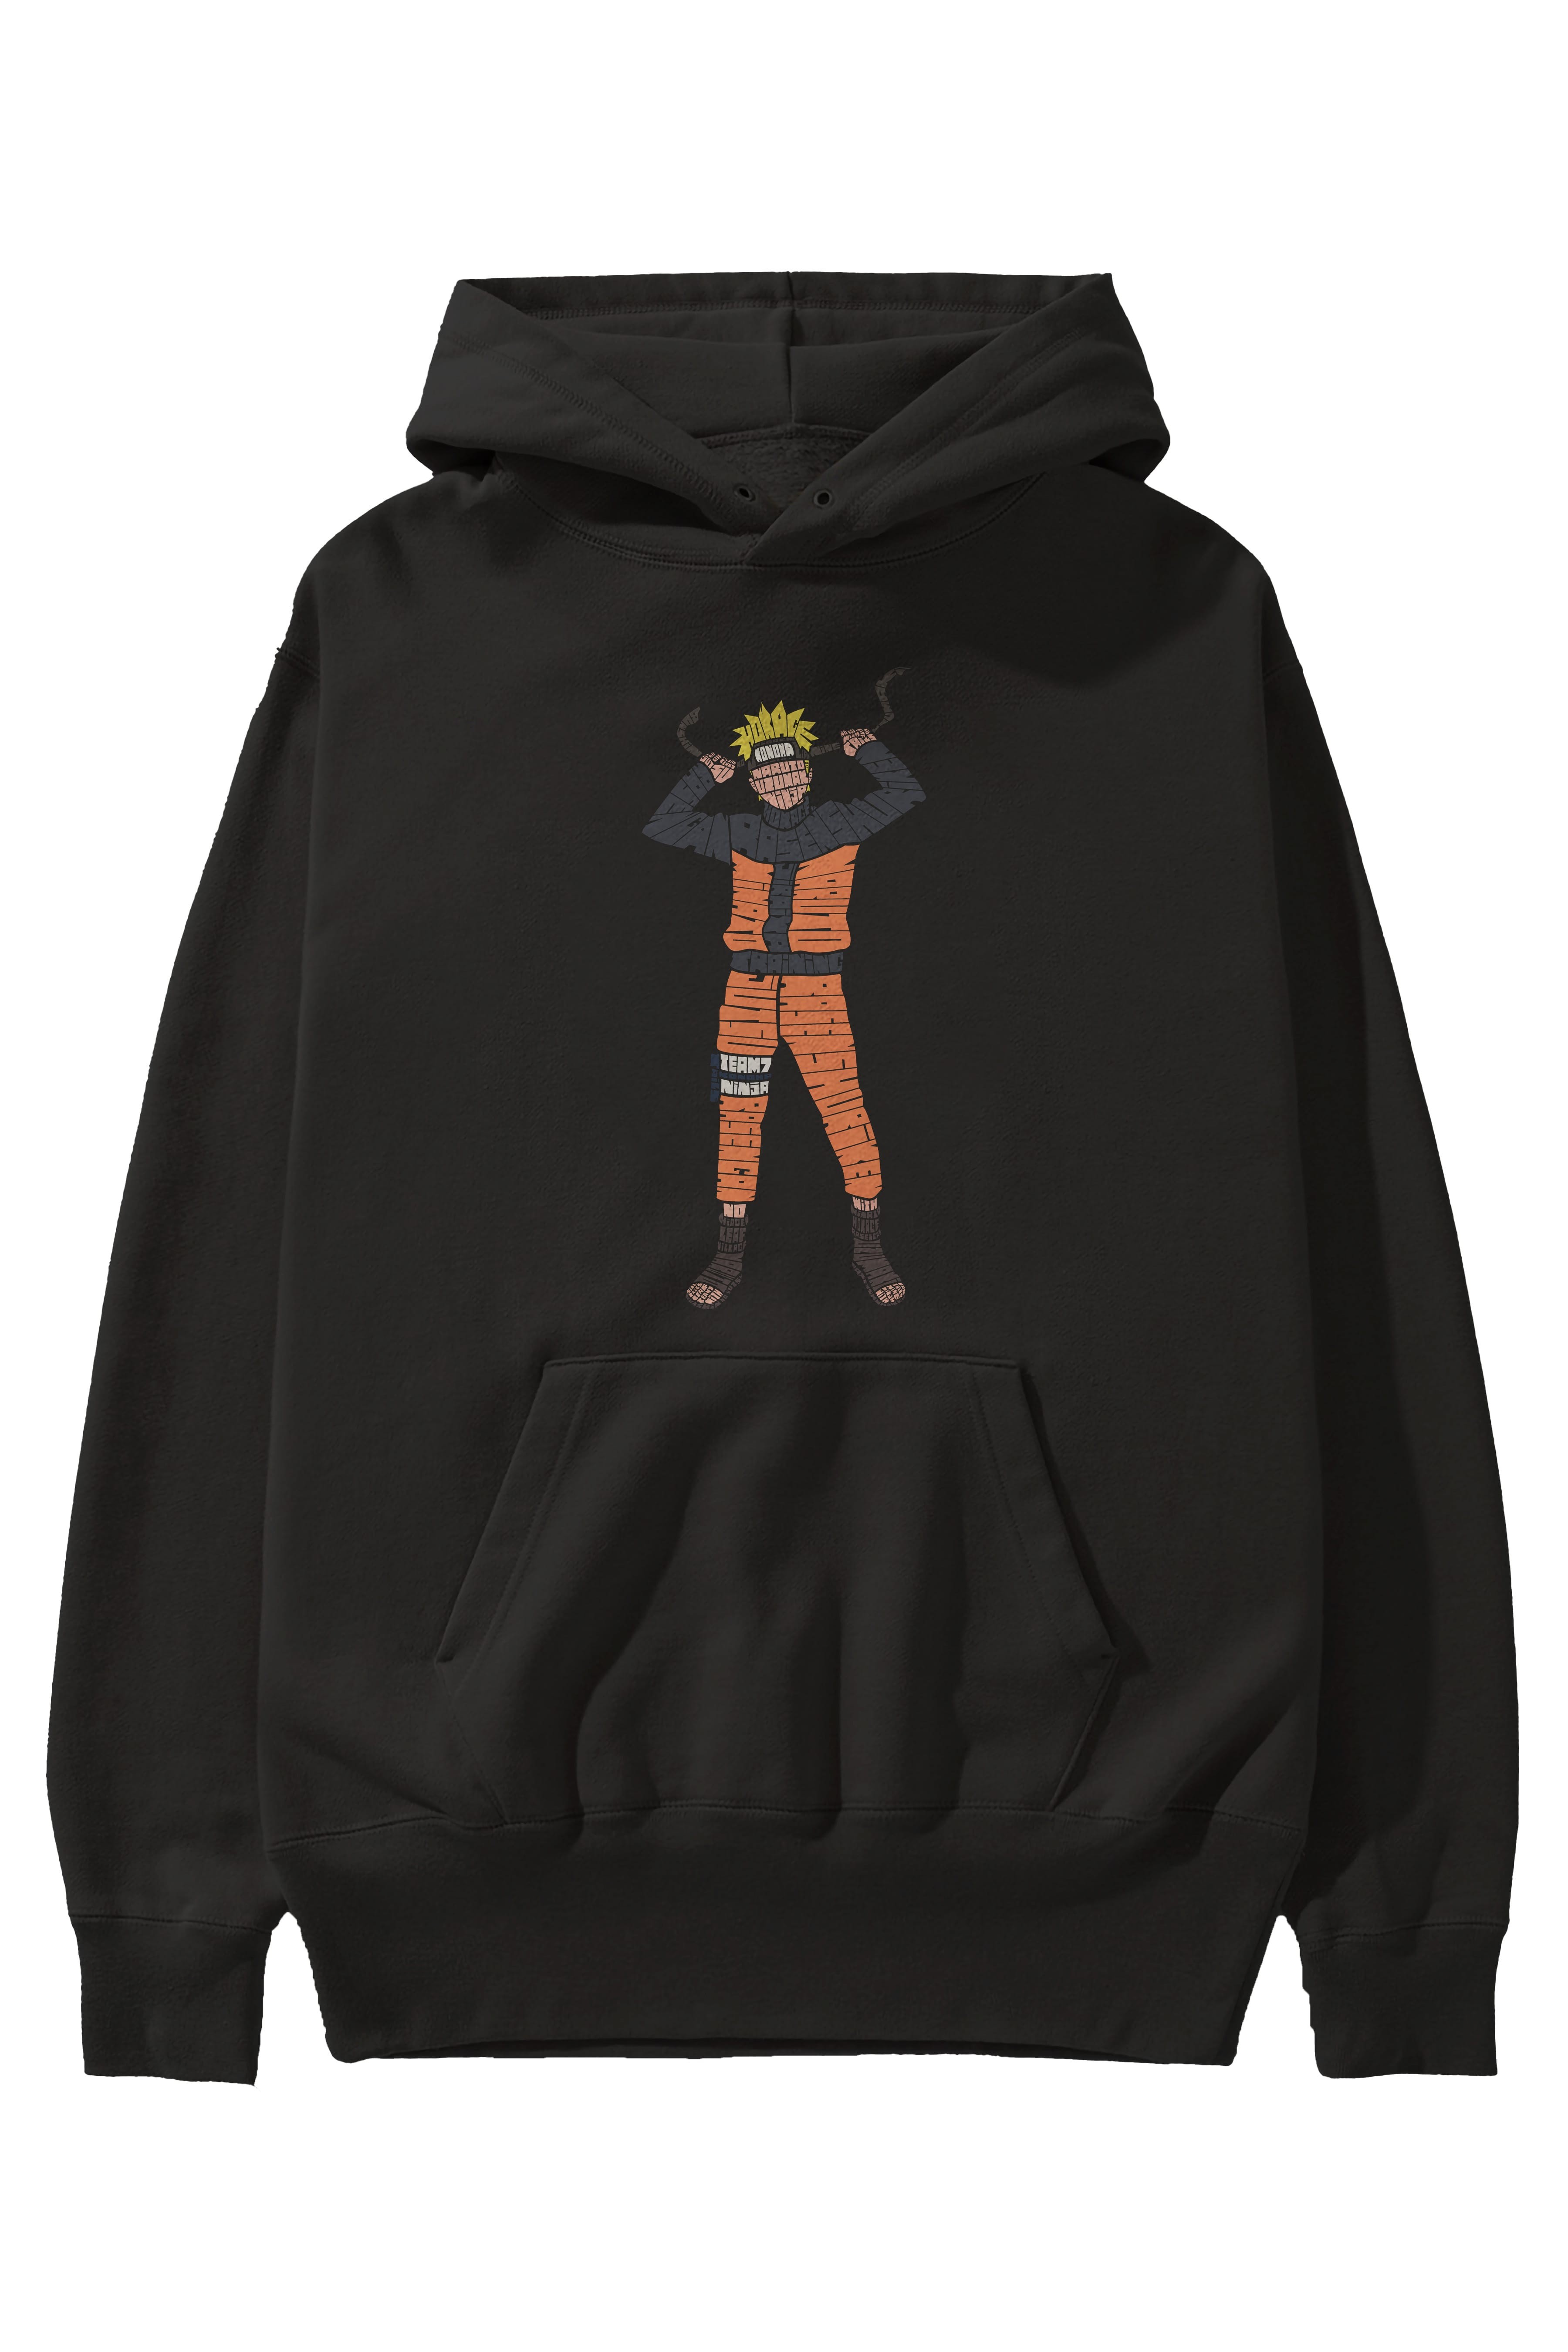 Naruto Ön Baskılı Hoodie Oversize Kapüşonlu Sweatshirt Erkek Kadın Unisex